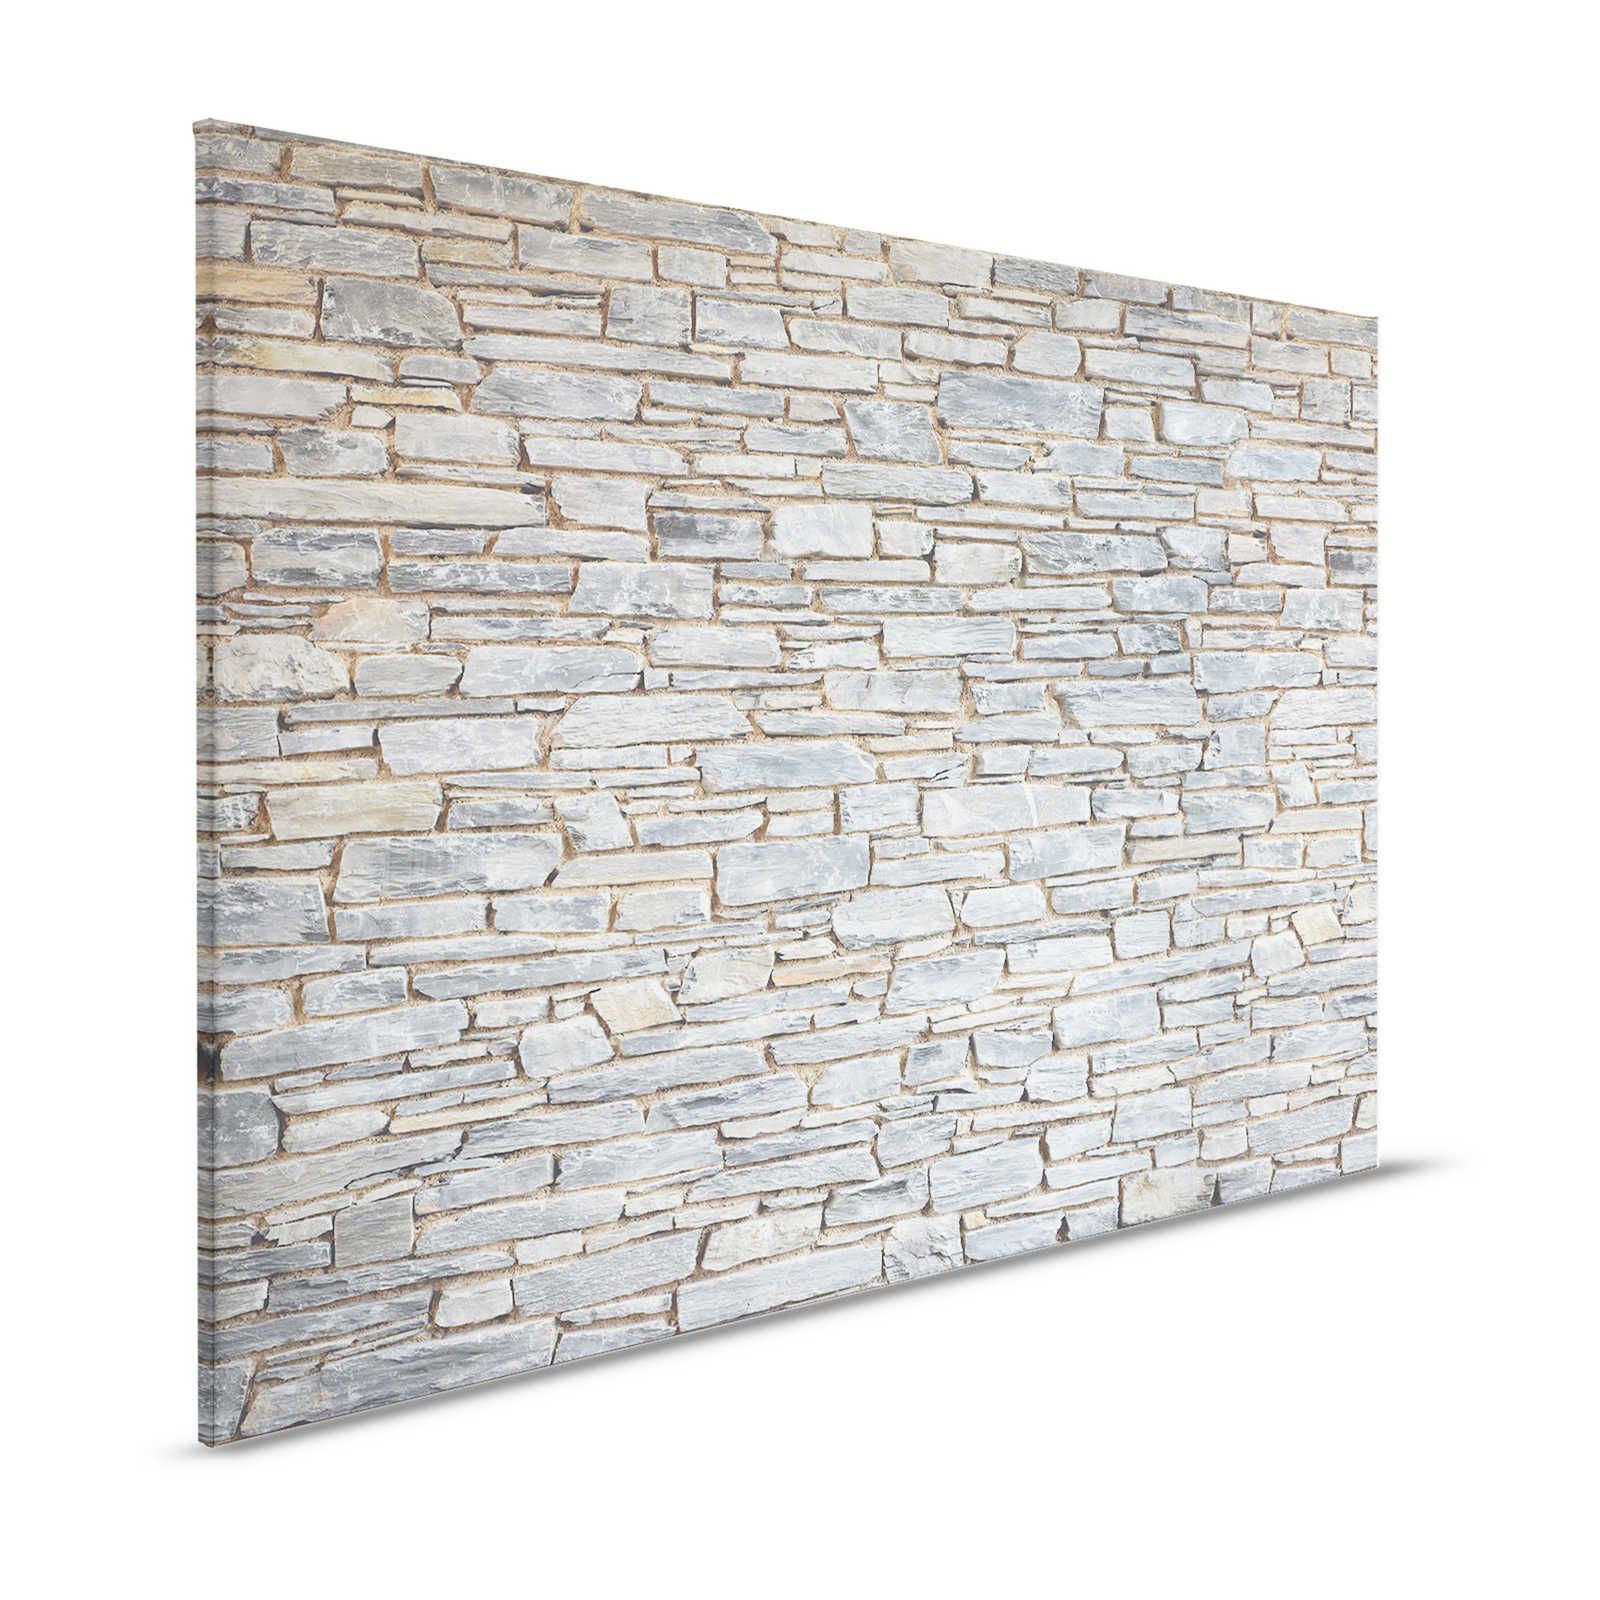 Mur de pierre toile claire aspect pierre naturelle grise - 1,20 m x 0,80 m
